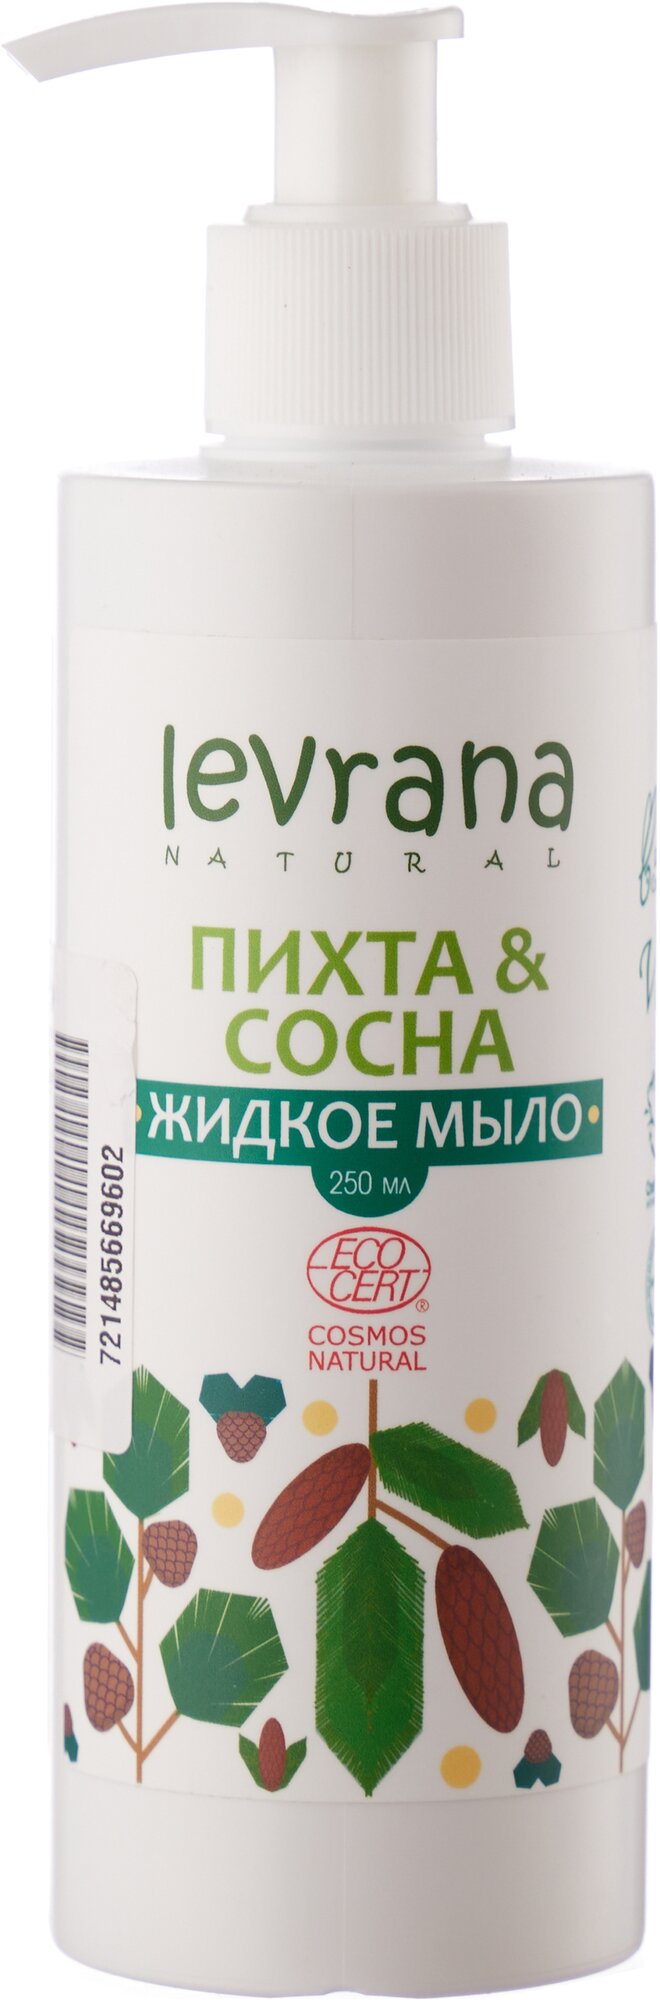 Жидкое мыло Levrana Пихта сосна, 250 мл - фото №1